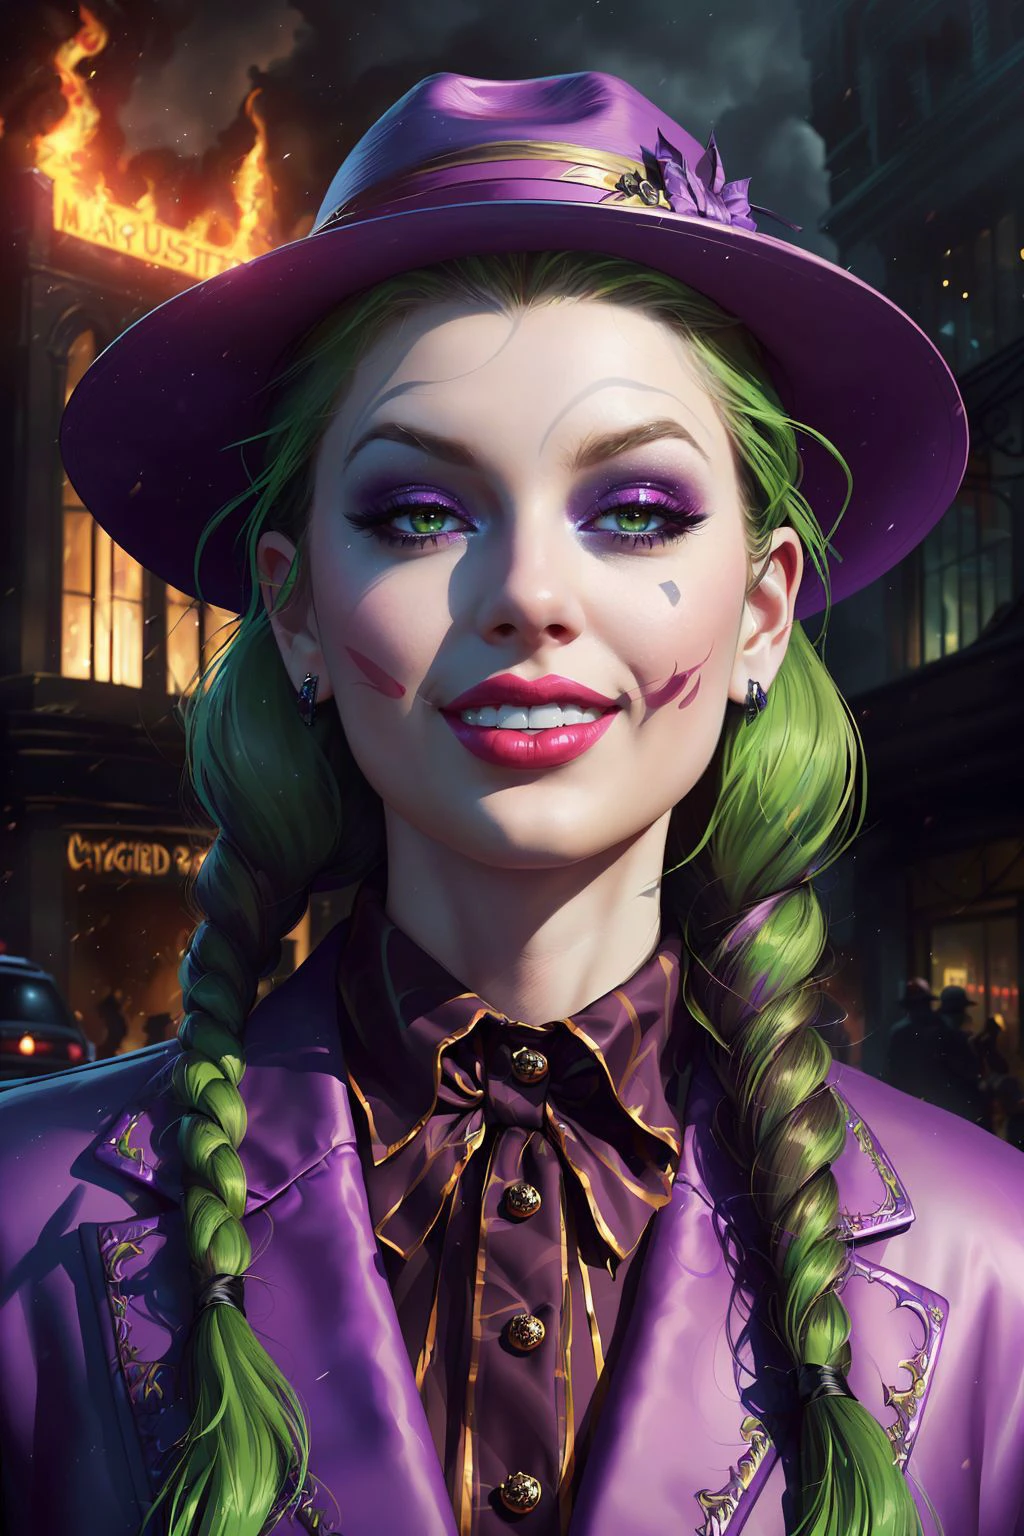 Ein atemberaubendes digitales Gemälde von (Taylor Swift:1.0),Allein, (mittlerer Schuss:1.4), Realistisch, Meisterwerk, beste Qualität, Hochdetailliert, (Als weiblicher Joker, paint a Meisterwerk in vibrant 8K quality. Gekleidet in ihren ikonischen lila Anzug mit einem passenden breitkrempigen Hut, Sie wurde in den chaotischen Straßen von Gotham gesehen, ein bedrohliches Grinsen breitete sich auf ihrem Gesicht aus. Ihr grünes Haar peitscht um ihr Gesicht, während die Stadt hinter ihr brennt, Ihre Liebe zum Chaos wird in diesem visuell atemberaubenden Stück eingefangen.:1.3),(im Stil von Mike Mignola:1.1),Epische Fantasy-Charakterkunst, Konzeptkunst, Fantasy-Kunst,  Fantasy-Kunst, lebendig hoher Kontrast,Trends auf ArtStation, dramatische Beleuchtung, Umgebungsverdeckung, volumetrische Beleuchtung, emotional, Abweichende Kunst, hyperdetaillierte Abbildung, 8k, Wunderschöne Beleuchtung, vamptech ,(Porträt in voller Größe:1.8),(Geflochtene Zöpfe mit schwarzen Bändern: lang, dicke Zöpfe ordentlich geflochten und am Ende mit schwarzen Bändern zusammengebunden, das Gesicht umrahmen und Unschuld betonen.:1.2),Foto-Shooting